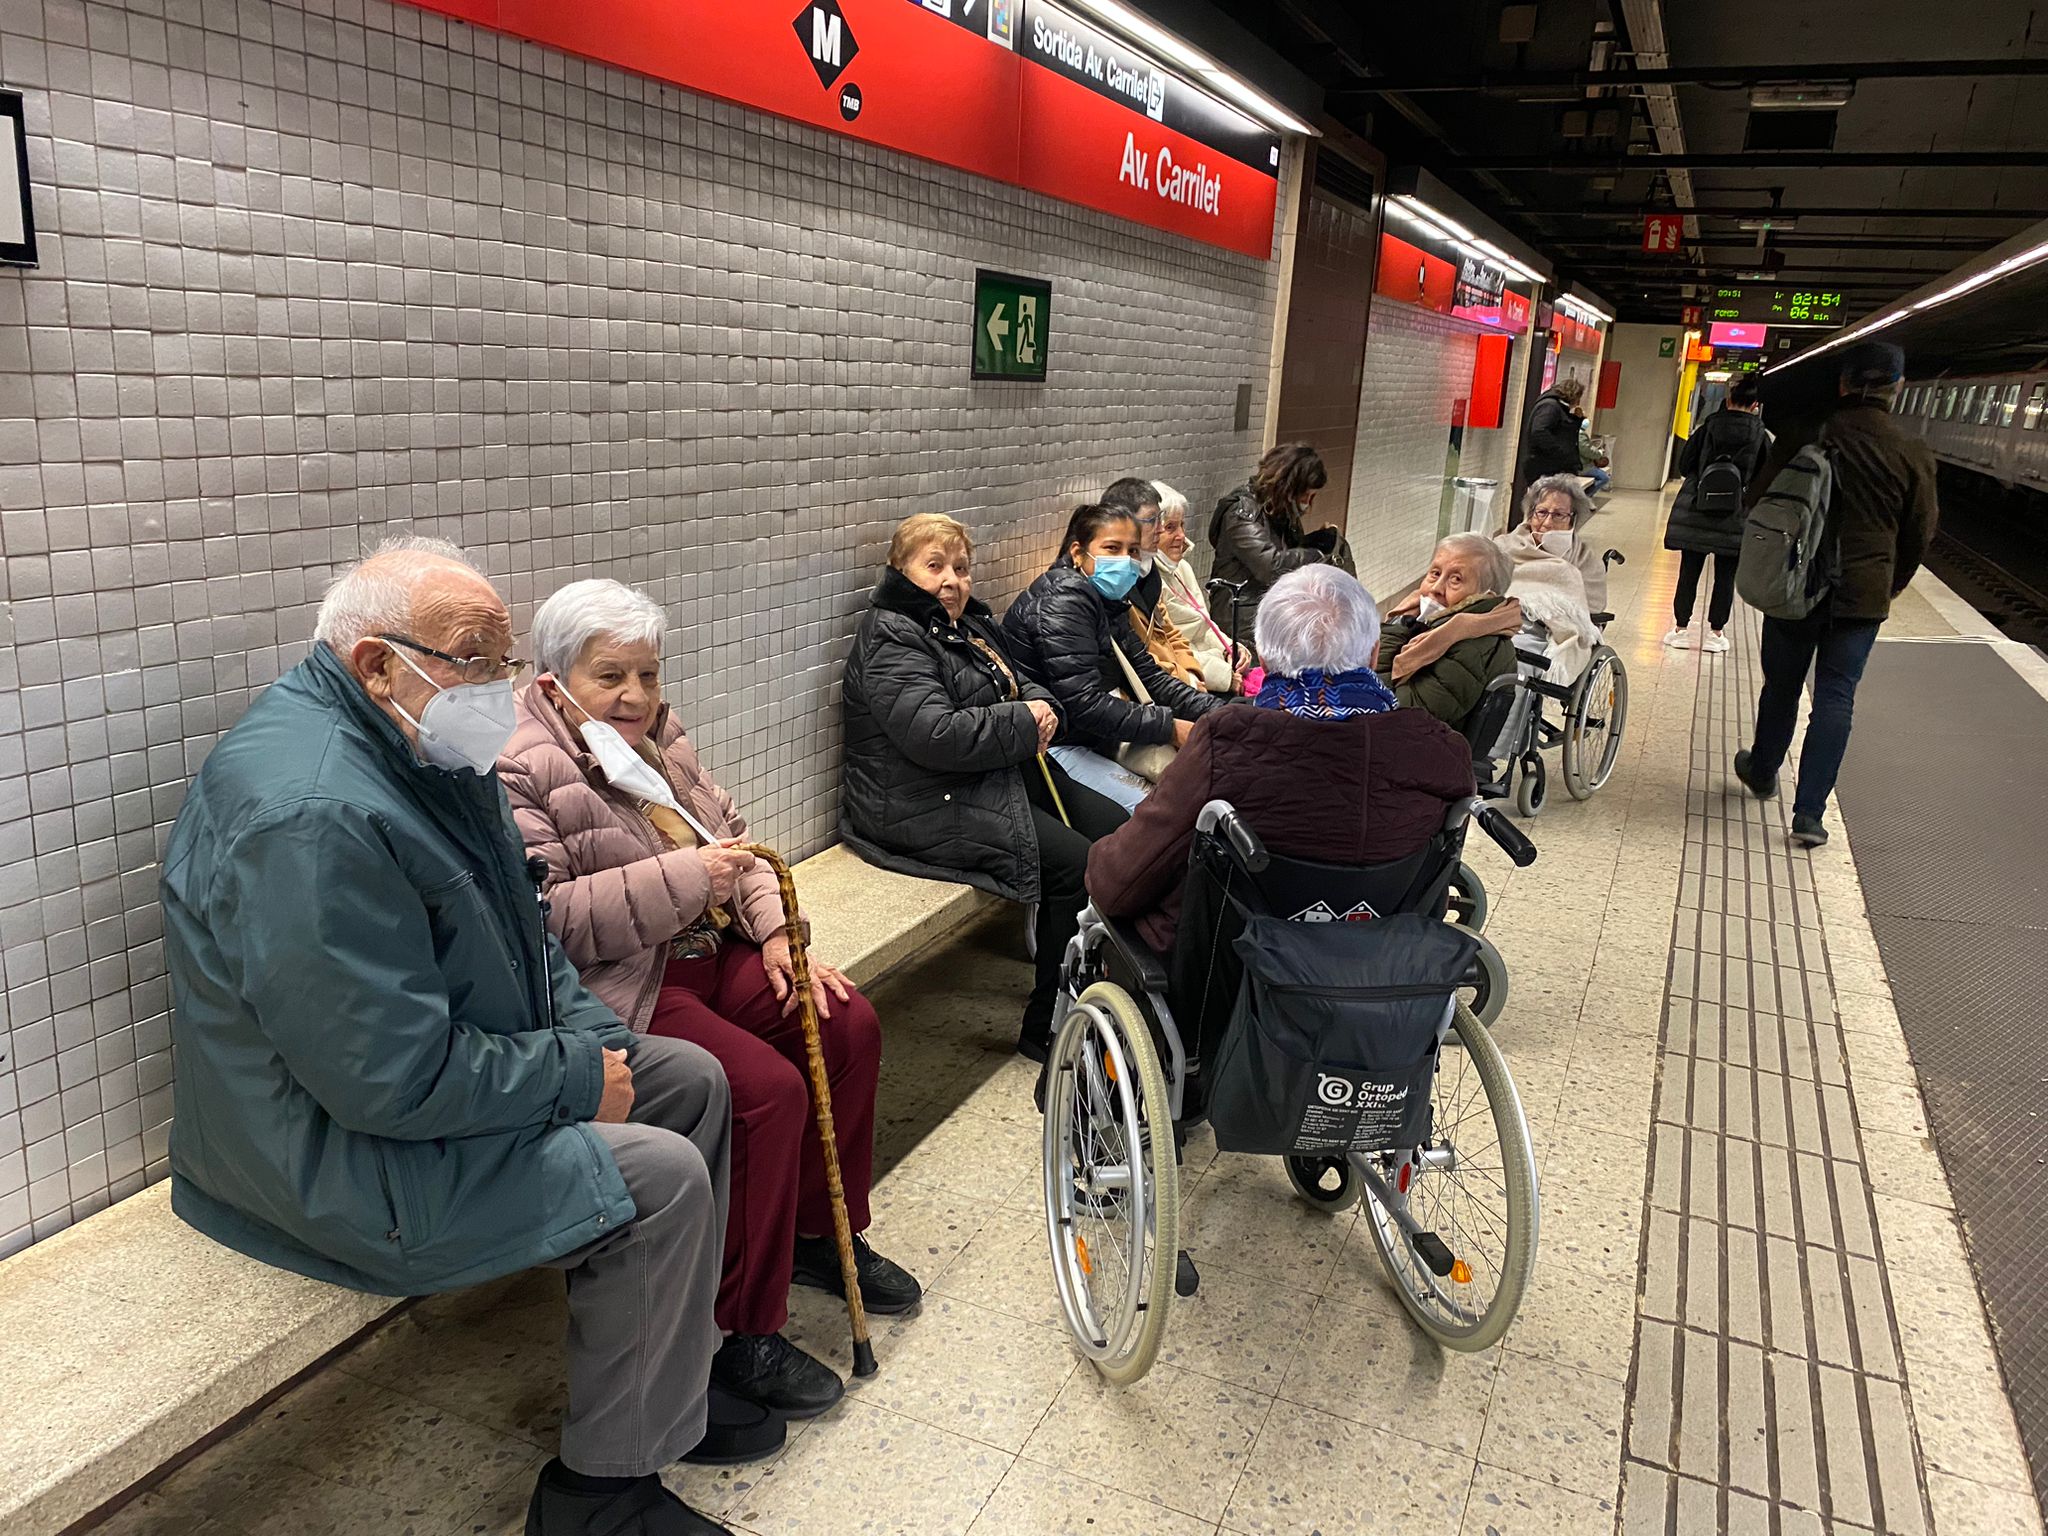 Persones ateses esperant el metro